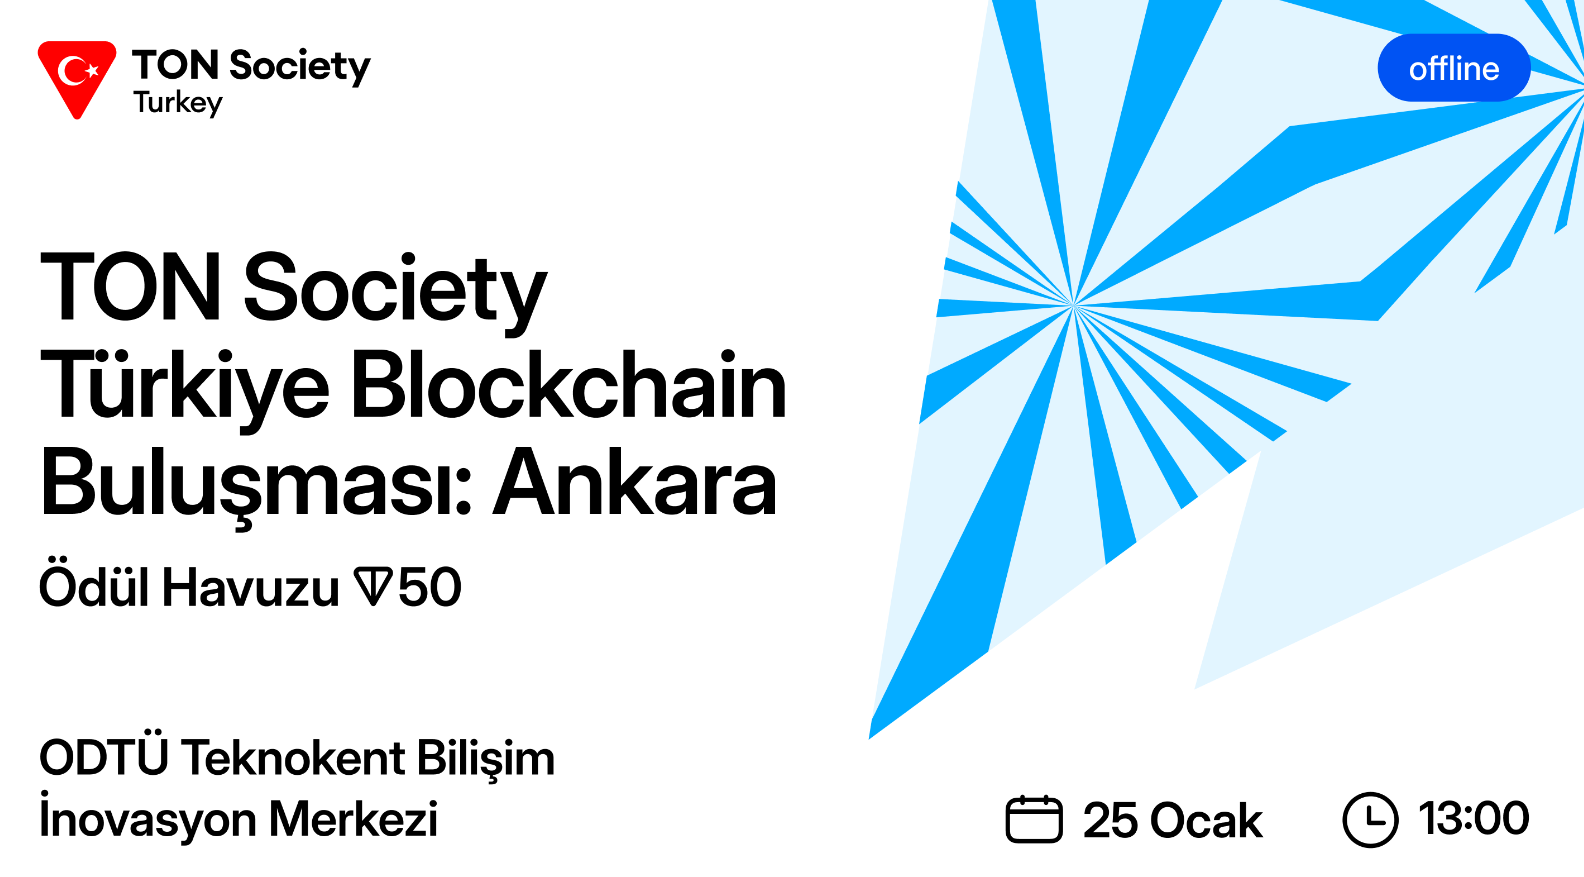 TON Society Türkiye Blockchain Buluşması